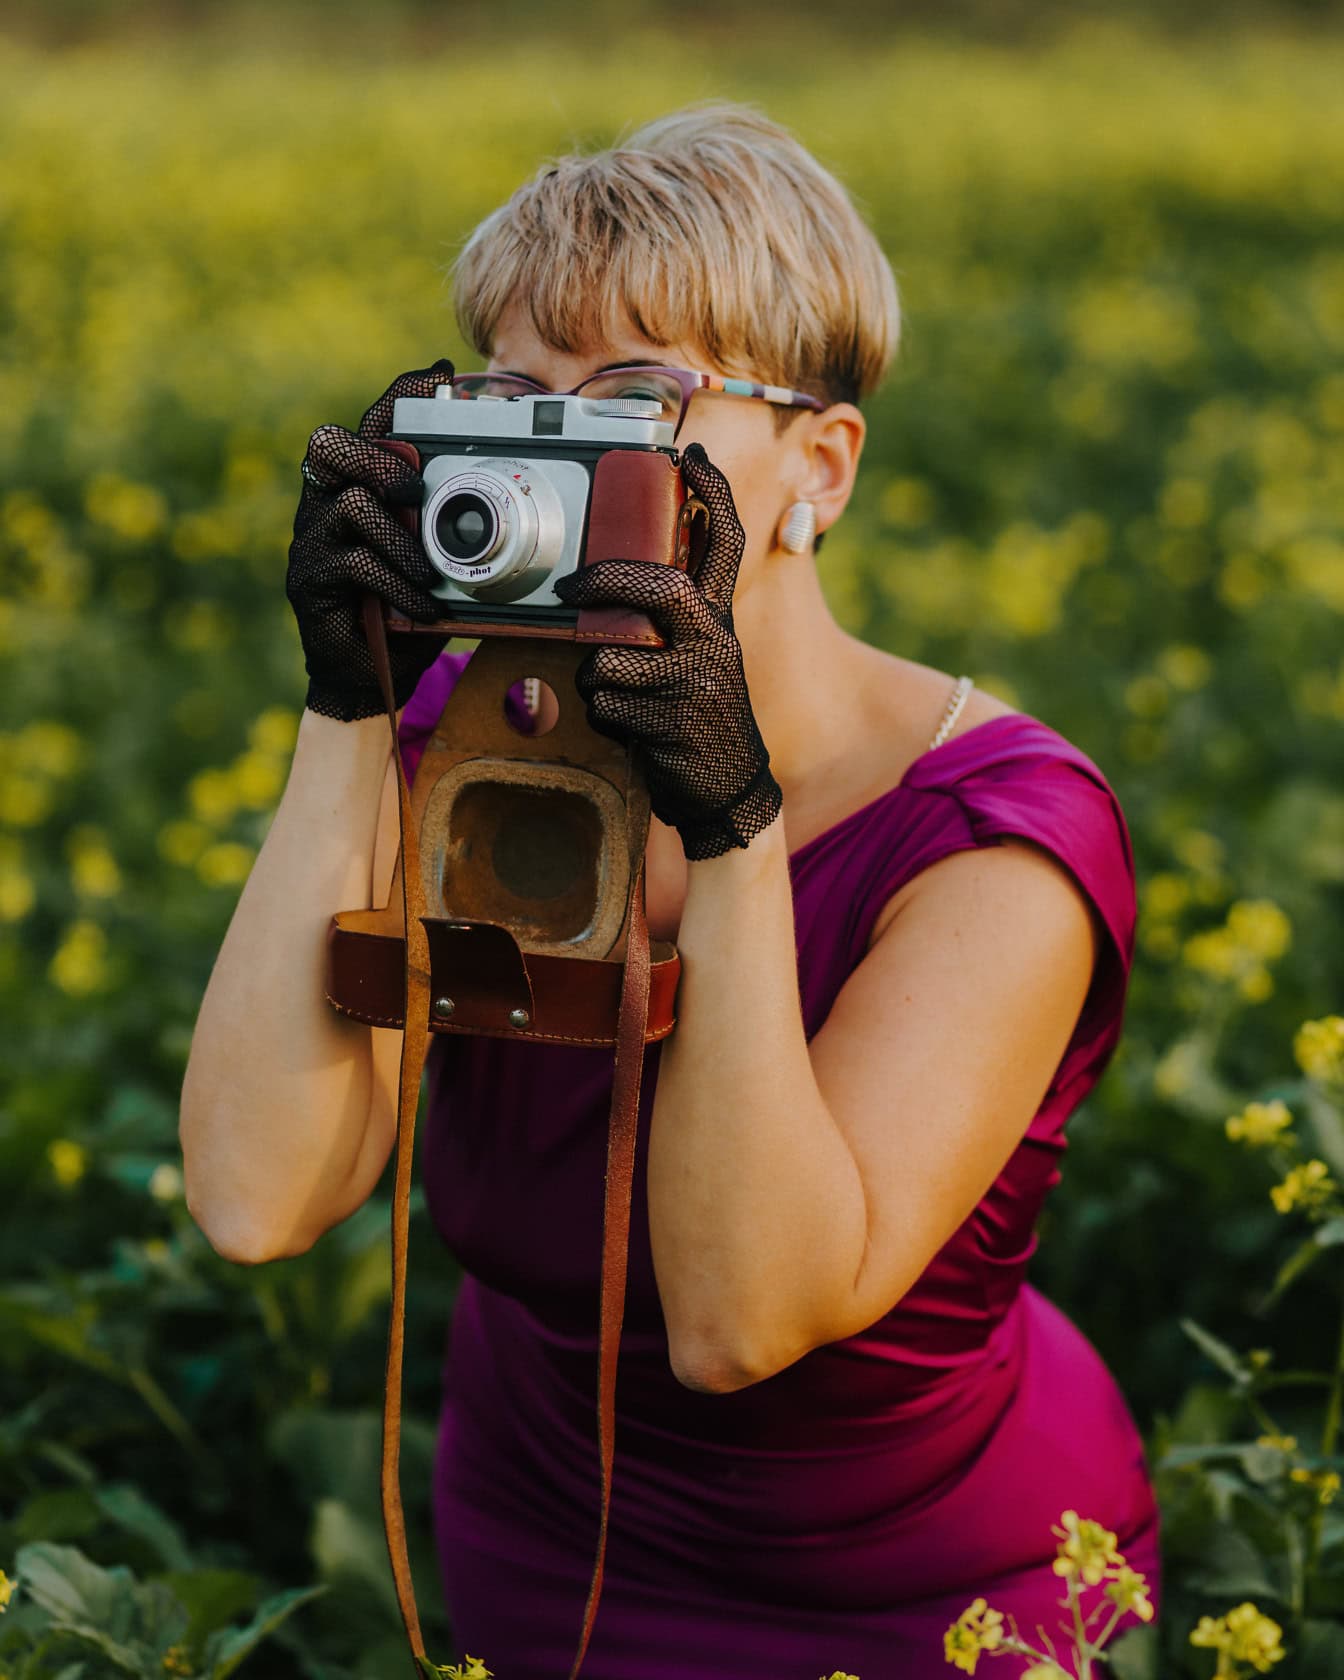 Glamoureuze damefotograaf met kort blond kapsel in purpere kleding tijdens het maken van een foto met een analoge fotocamera